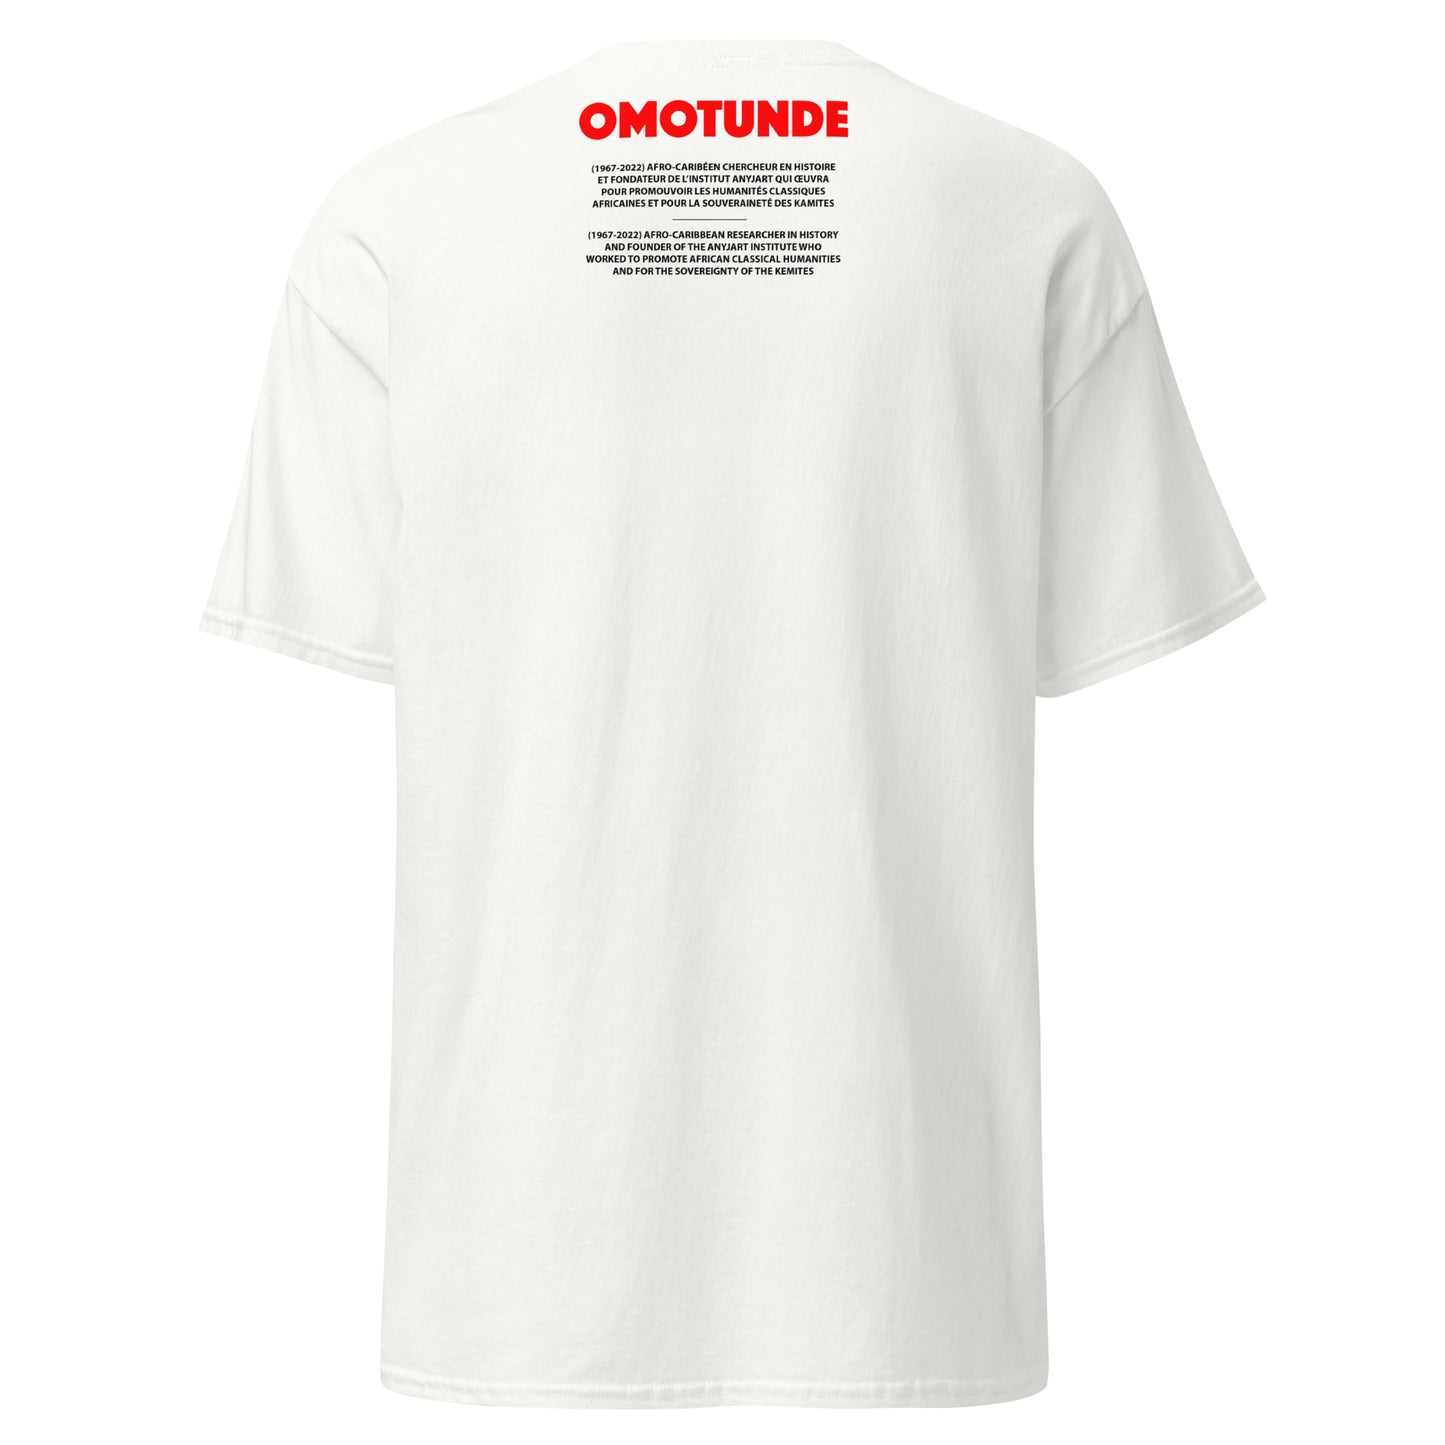 OMOTUNDE (T-shirt)